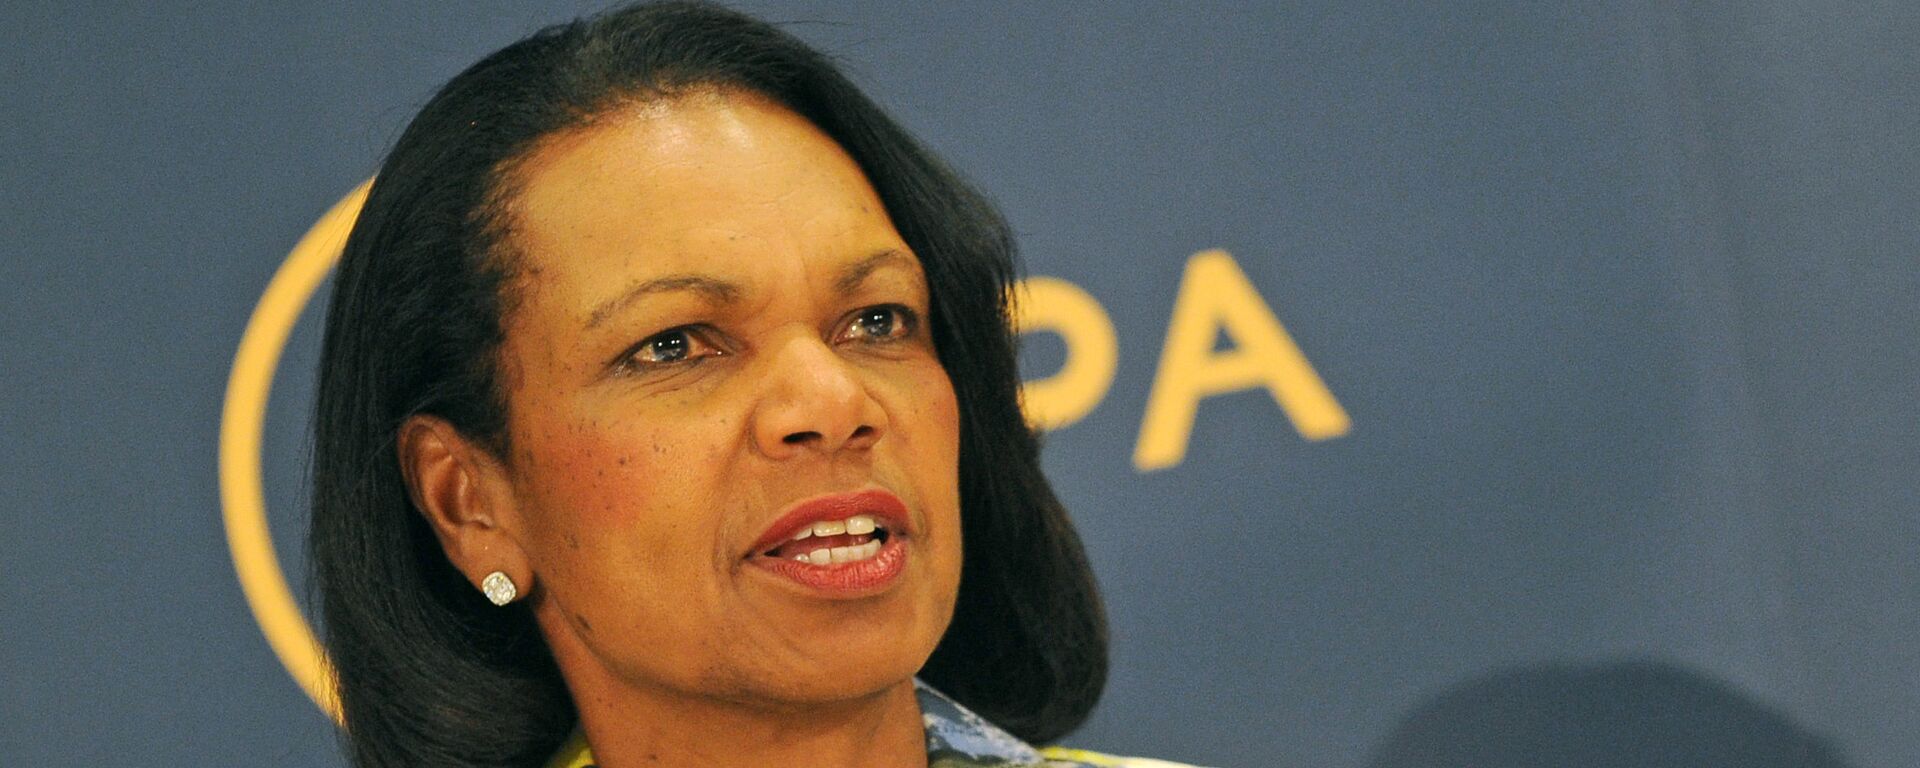 Condoleezza Rice, exsecretaria de Estado de EEUU (archivo) - Sputnik Mundo, 1920, 13.05.2017